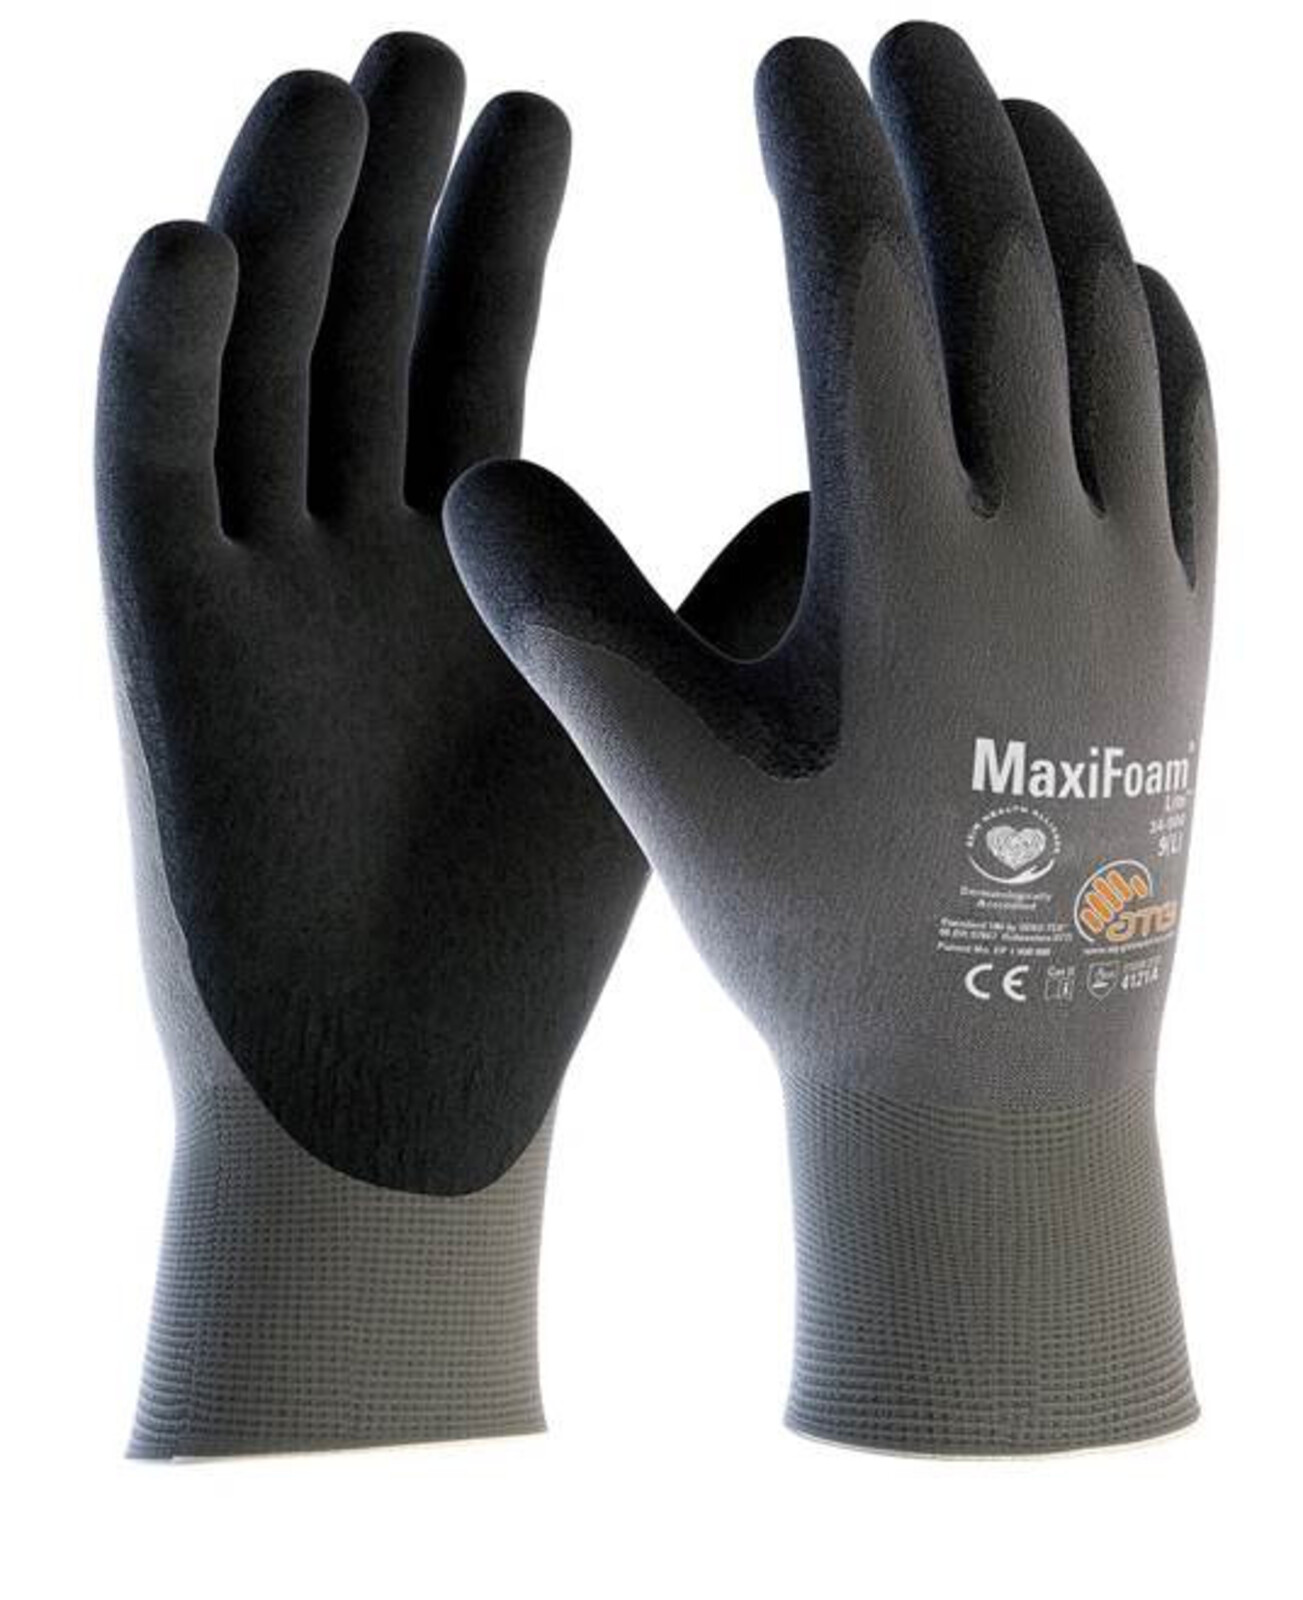 Pracovné rukavice ATG MaxiFoam LITE 34-900 (12 párov) - veľkosť: 6/XS, farba: sivá